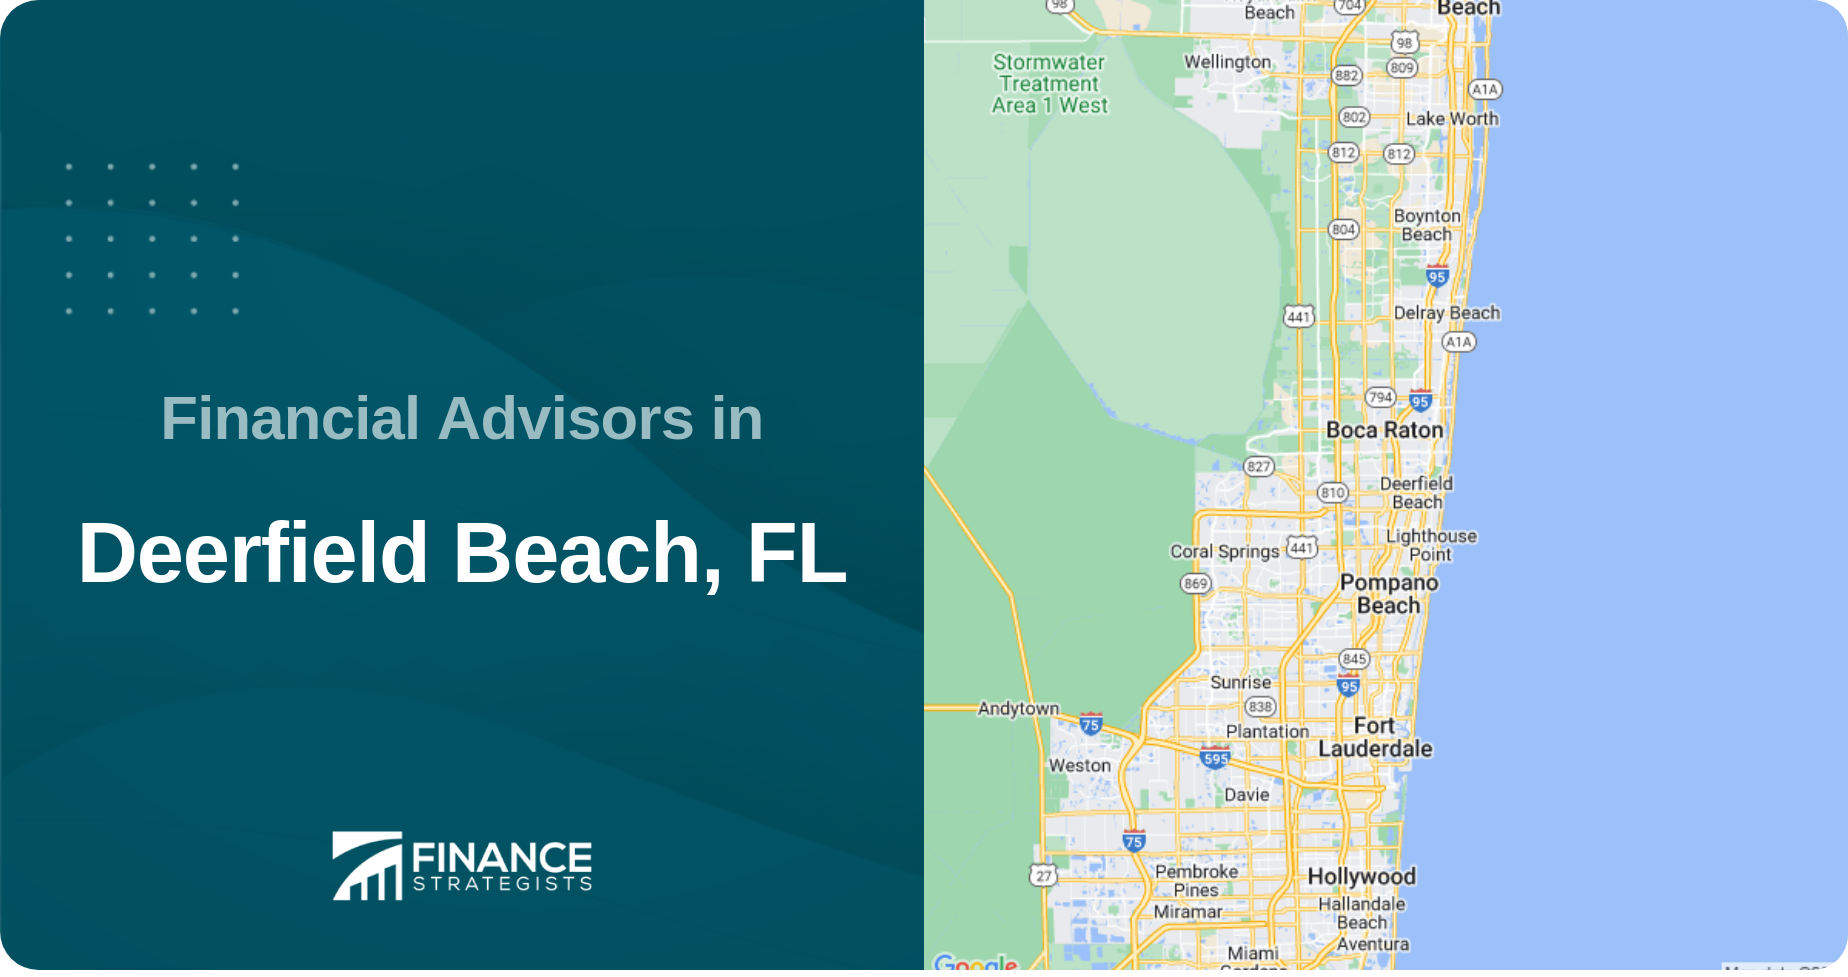 Financial Advisors in Deerfield Beach, FL